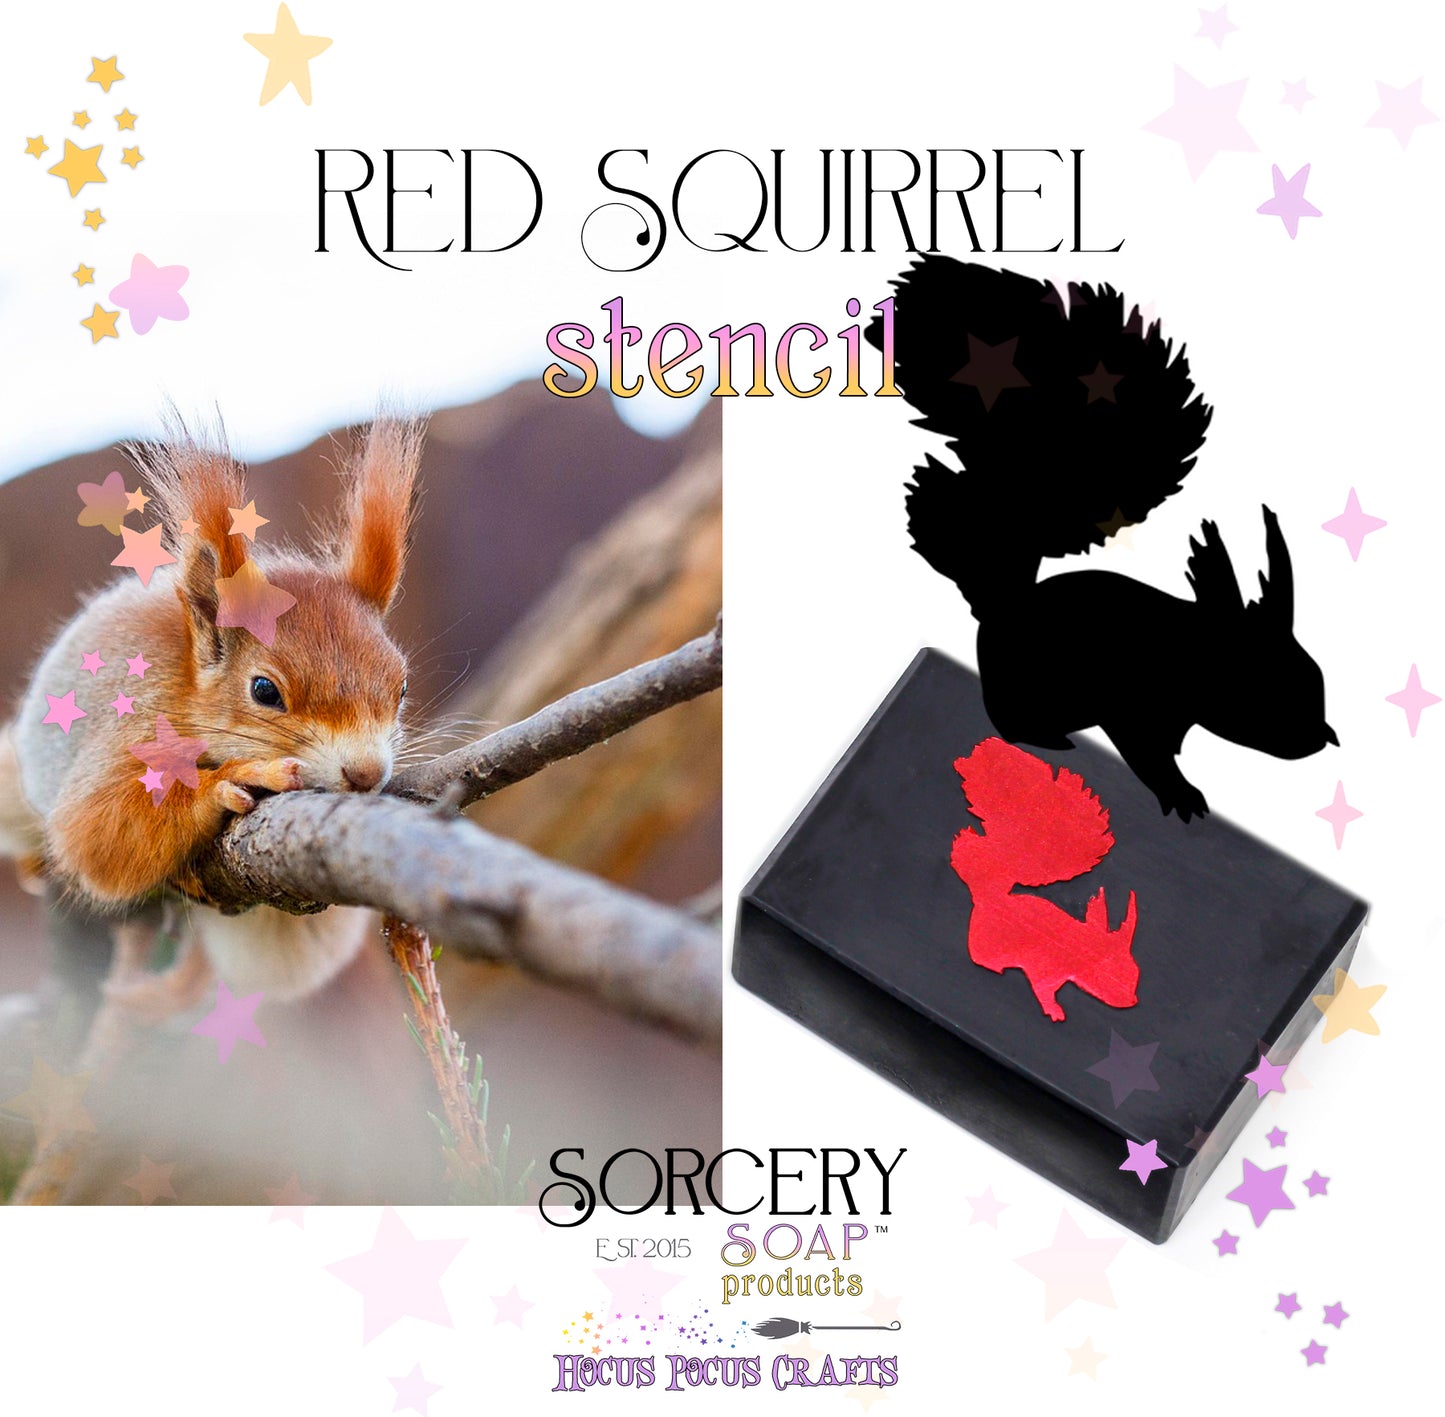 Red Squirrel stencil